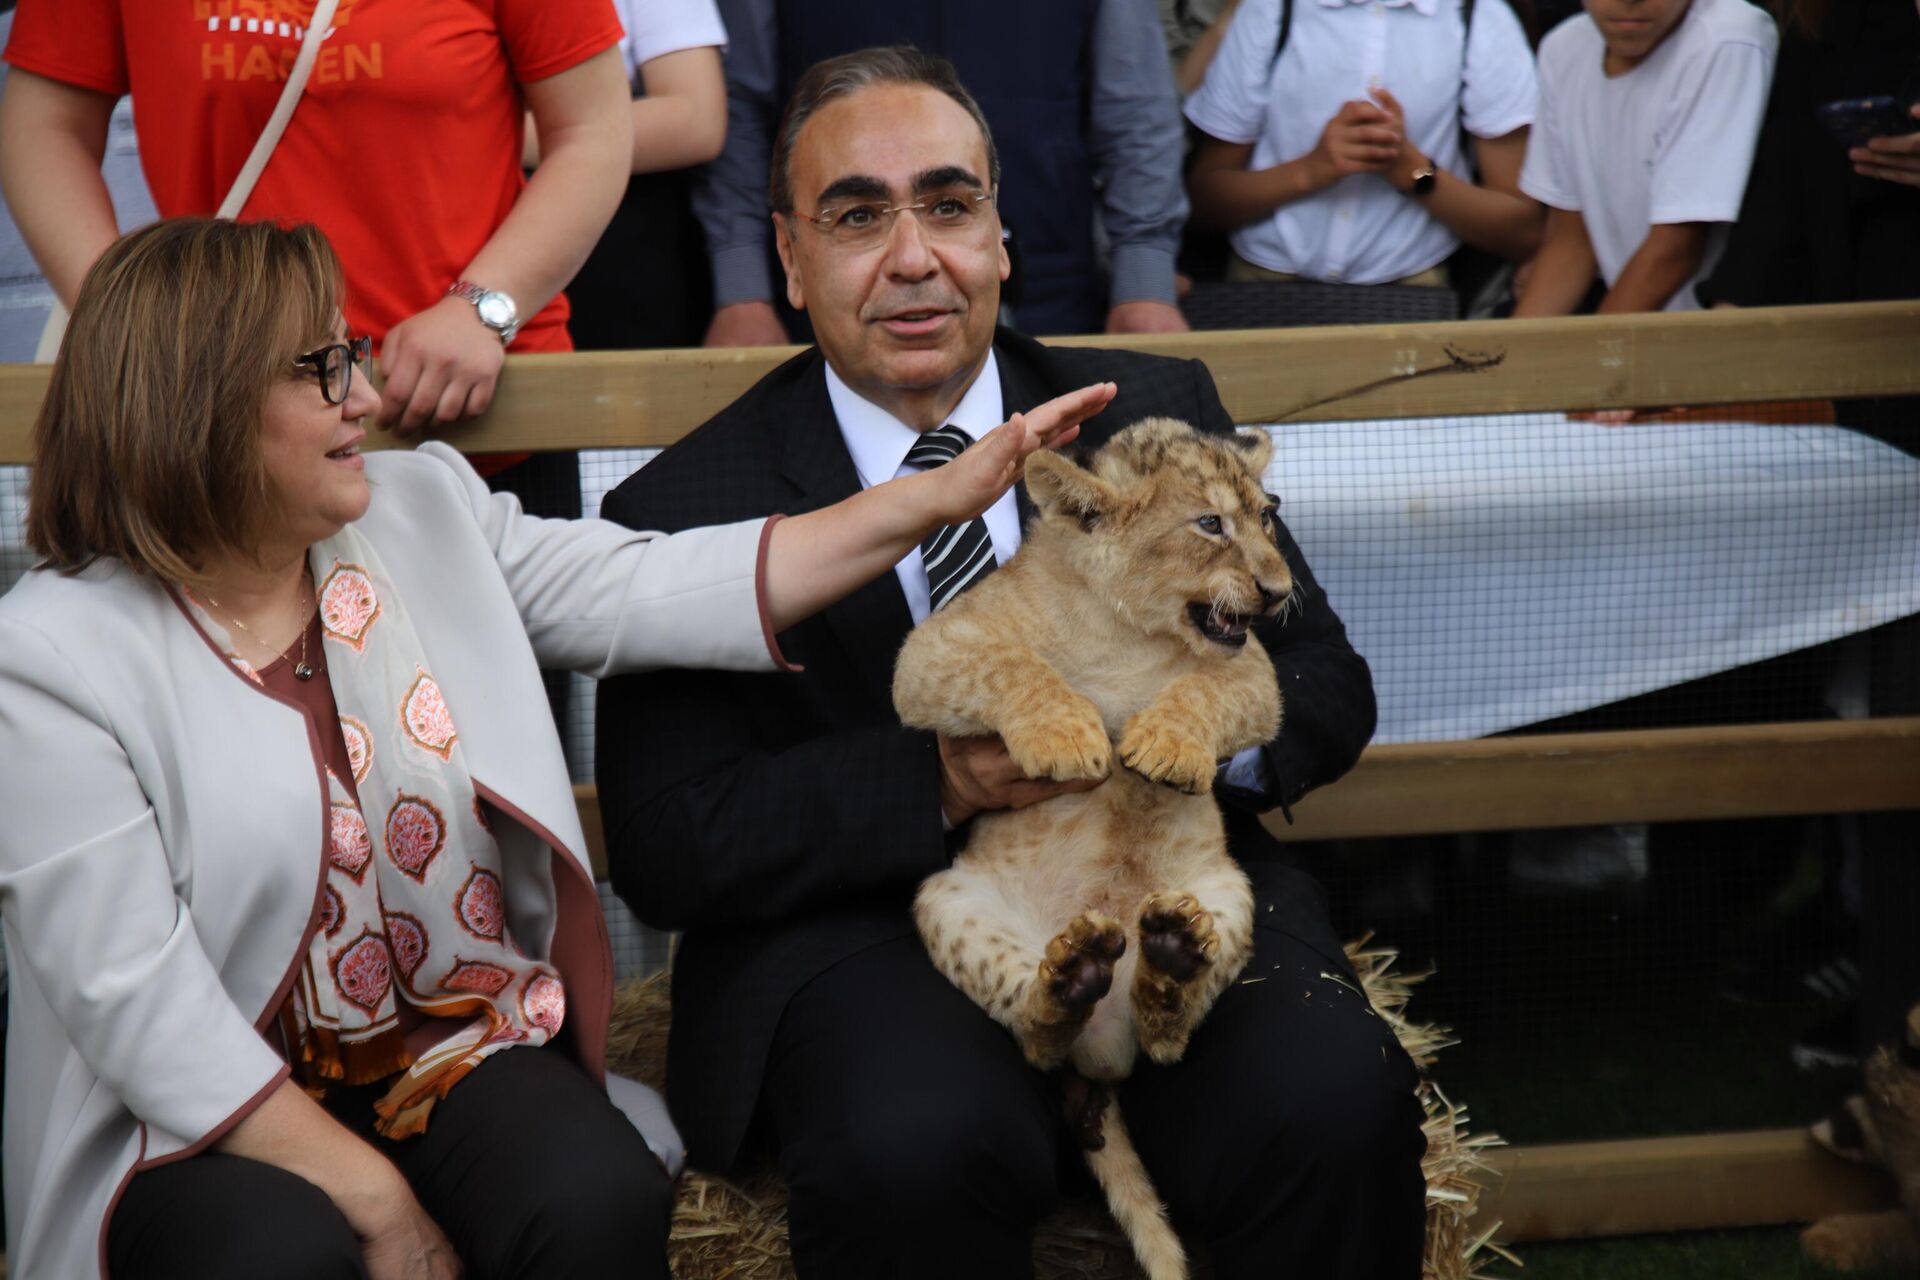 Sudan Cumhurbaşkanı tarafından 4 yıl önce Cumhurbaşkanı Recep Tayyip Erdoğan'a hediye edilen ve Gaziantep Hayvanat Bahçesinde bulunan 4 aslandan biri dördüz doğurdu. - Sputnik Türkiye, 1920, 31.05.2023